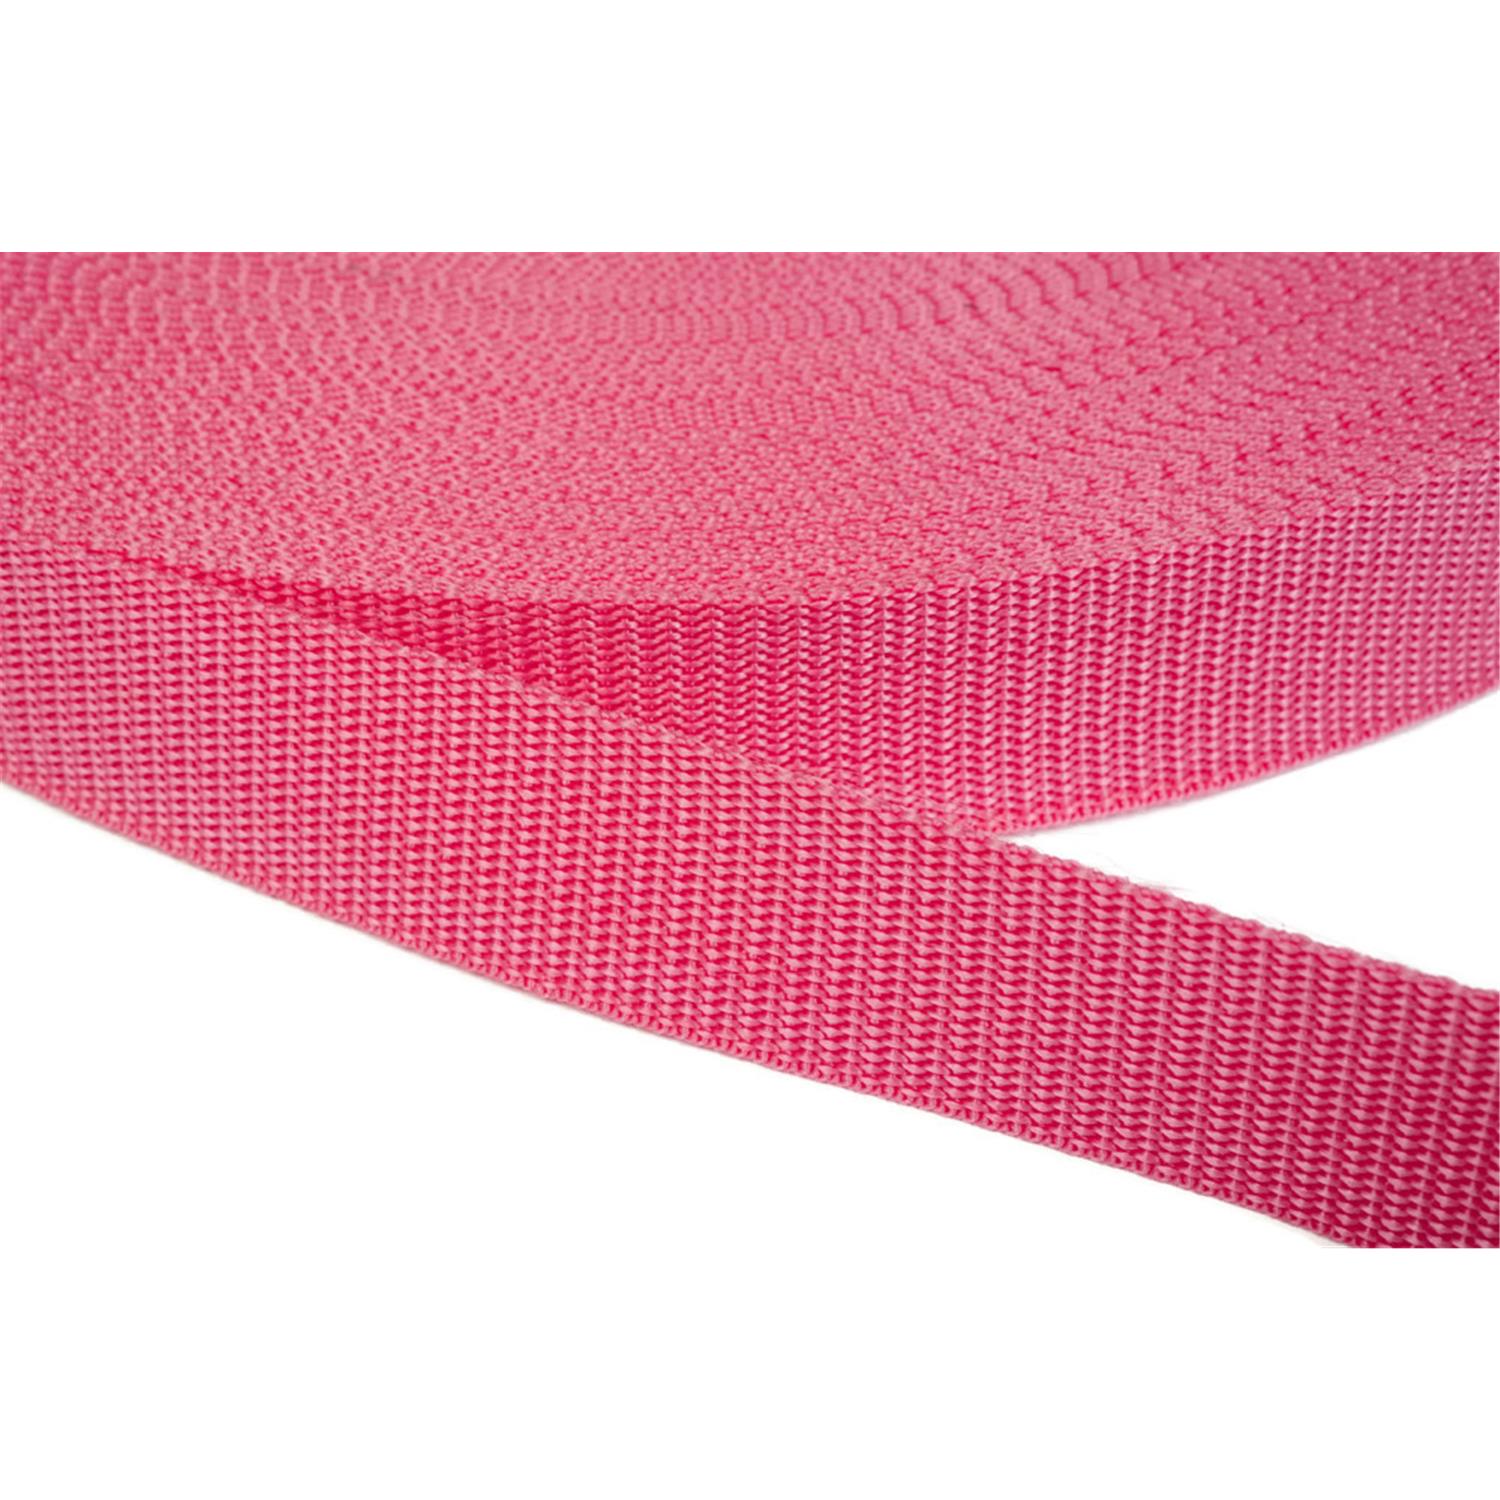 Gurtband 50mm breit aus Polypropylen in 41 Farben 13 - pink 12 Meter